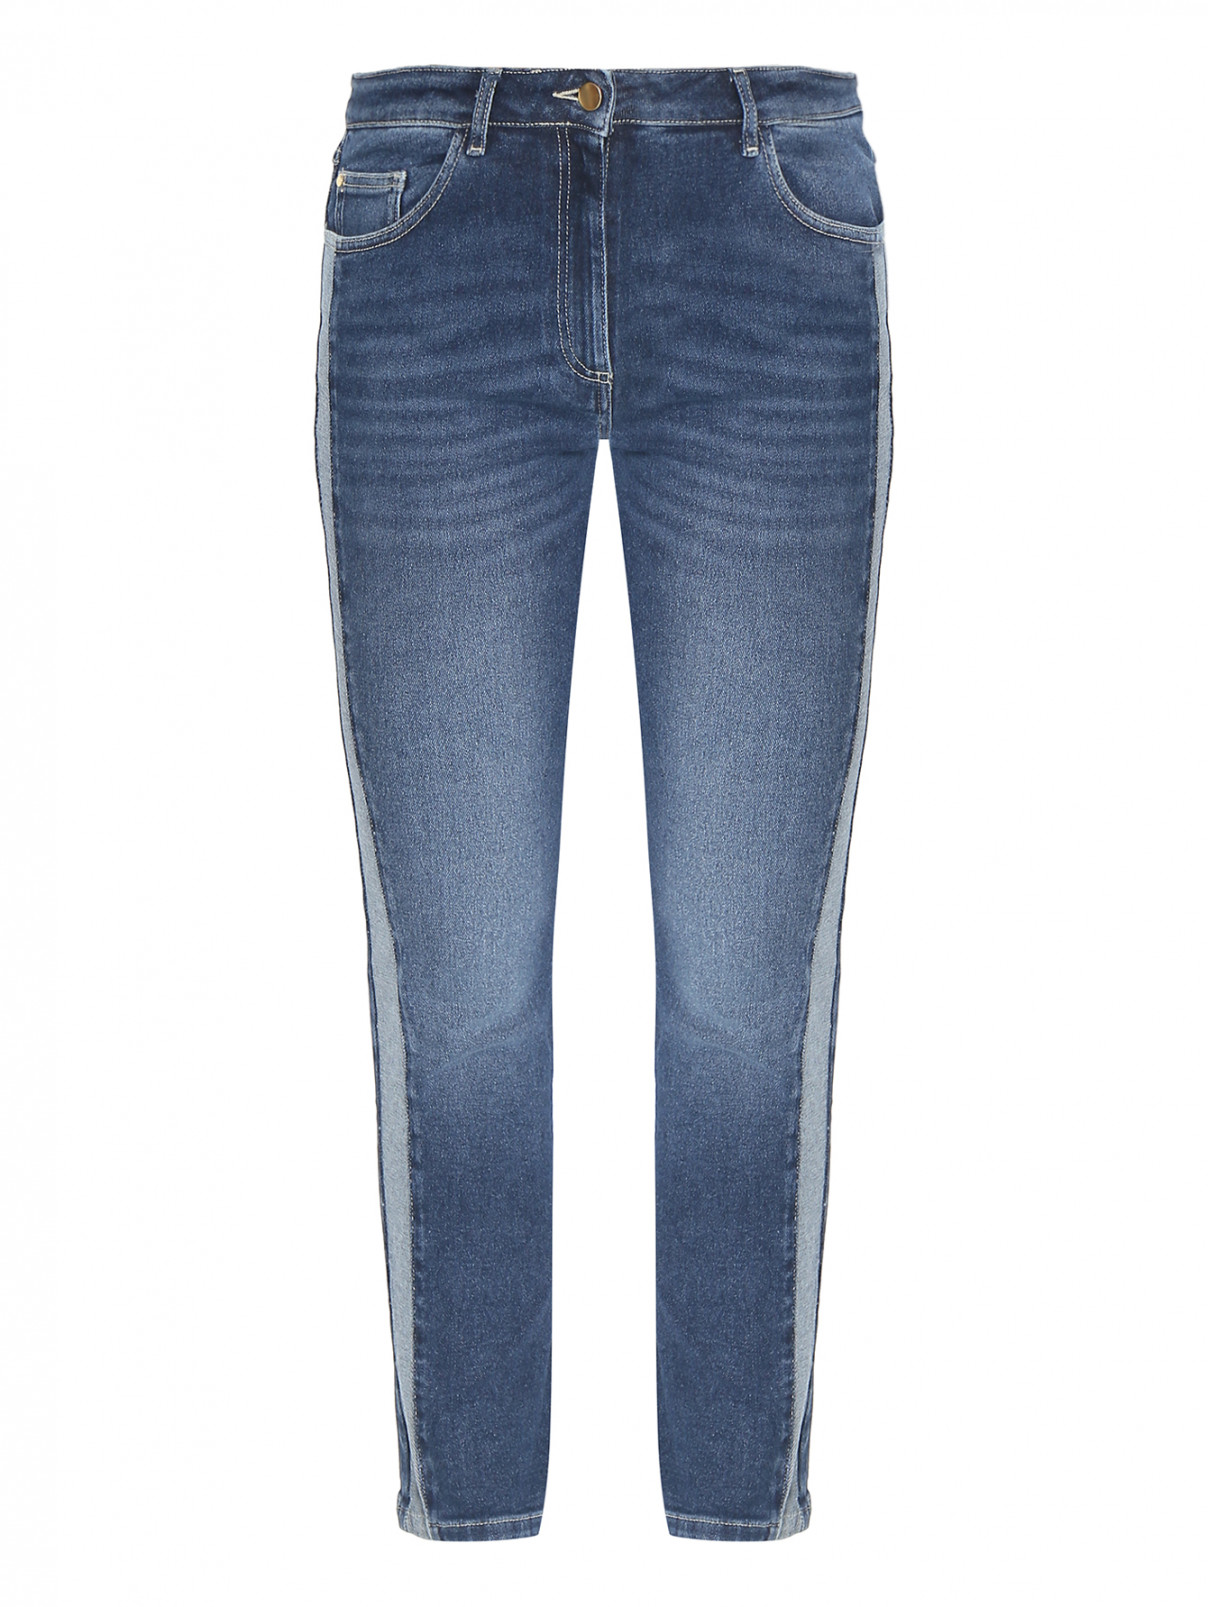 Зауженные джинсы из хлопка Persona by Marina Rinaldi  –  Общий вид  – Цвет:  Синий